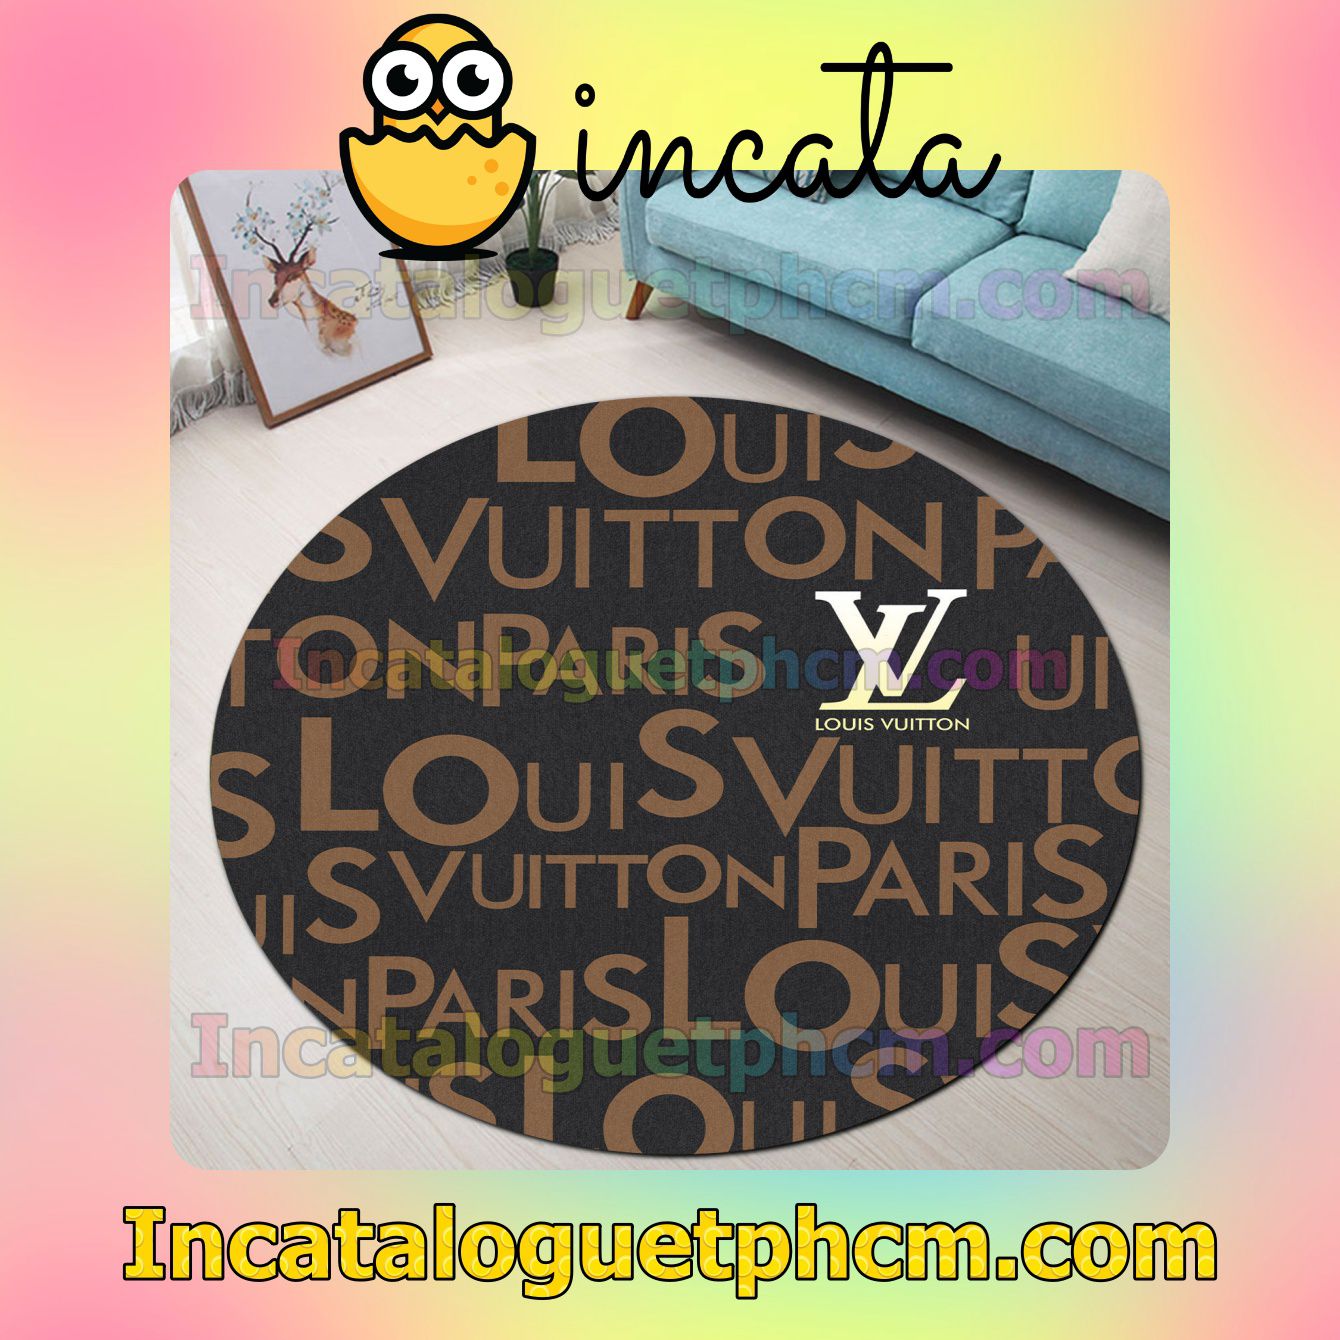 Louis Vuitton Paris Luxury Brand Round Carpet Rugs For Kitchen